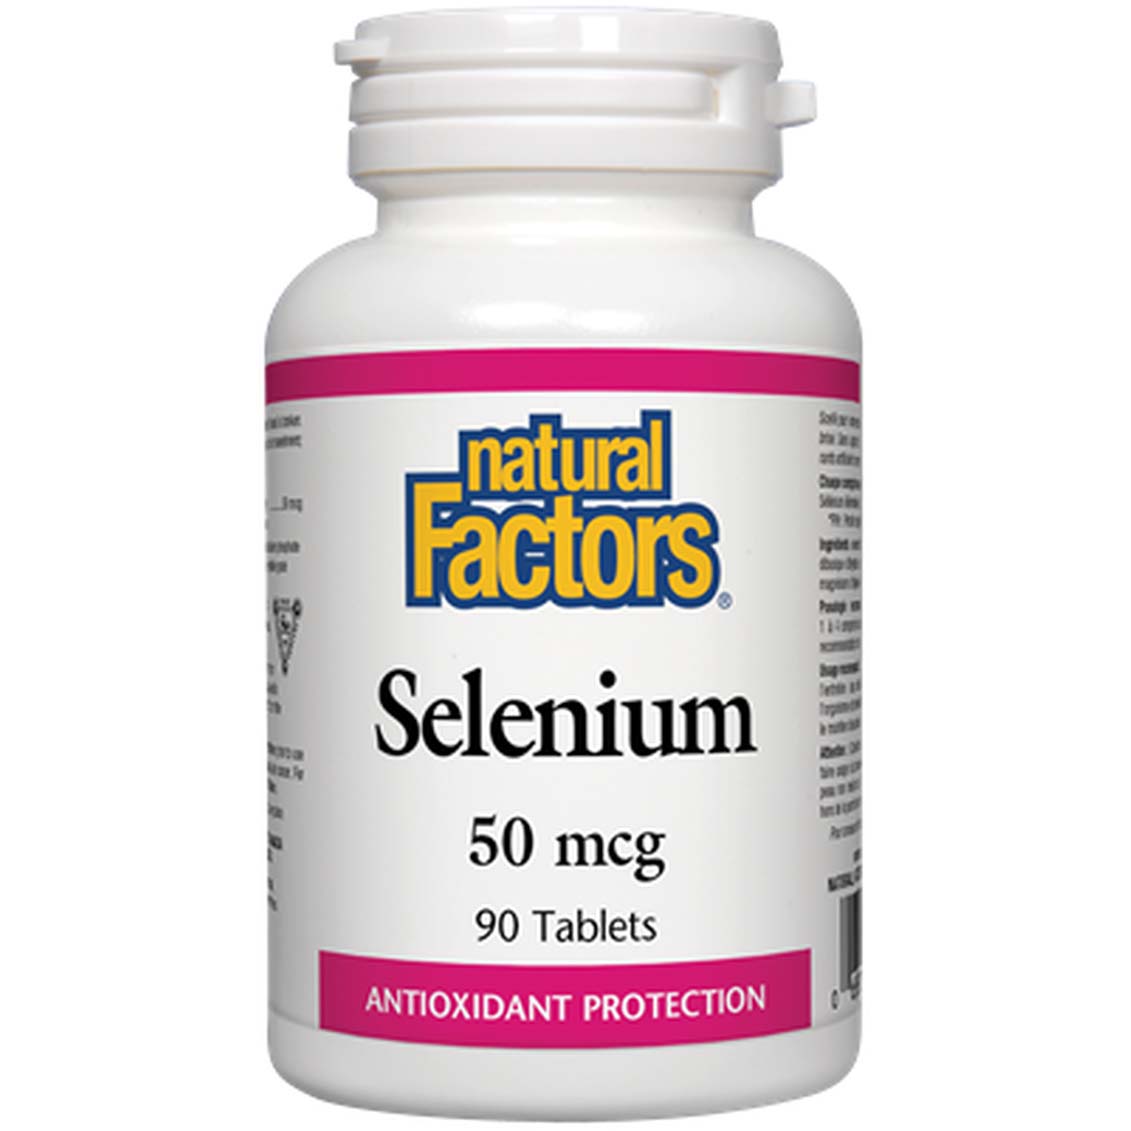 Natural Factors Selenium, 50 mcg, 90 Tablets